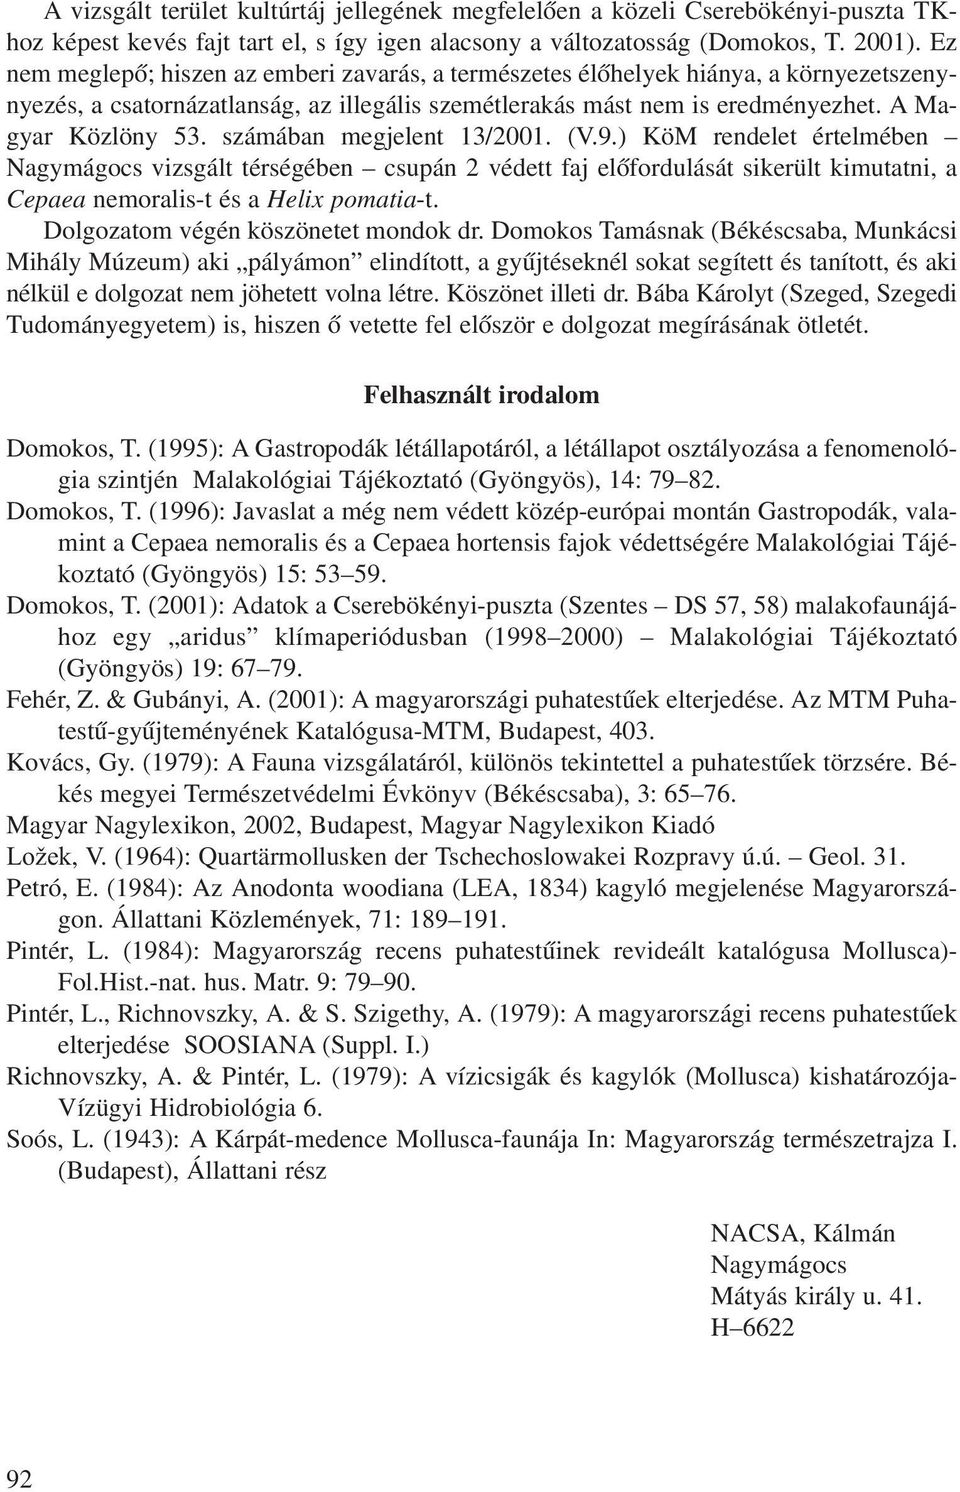 számában megjelent 13/2001. (V.9.) KöM rendelet értelmében Nagymágocs vizsgált térségében csupán 2 védett faj elõfordulását sikerült kimutatni, a Cepaea nemoralis-t és a Helix pomatia-t.